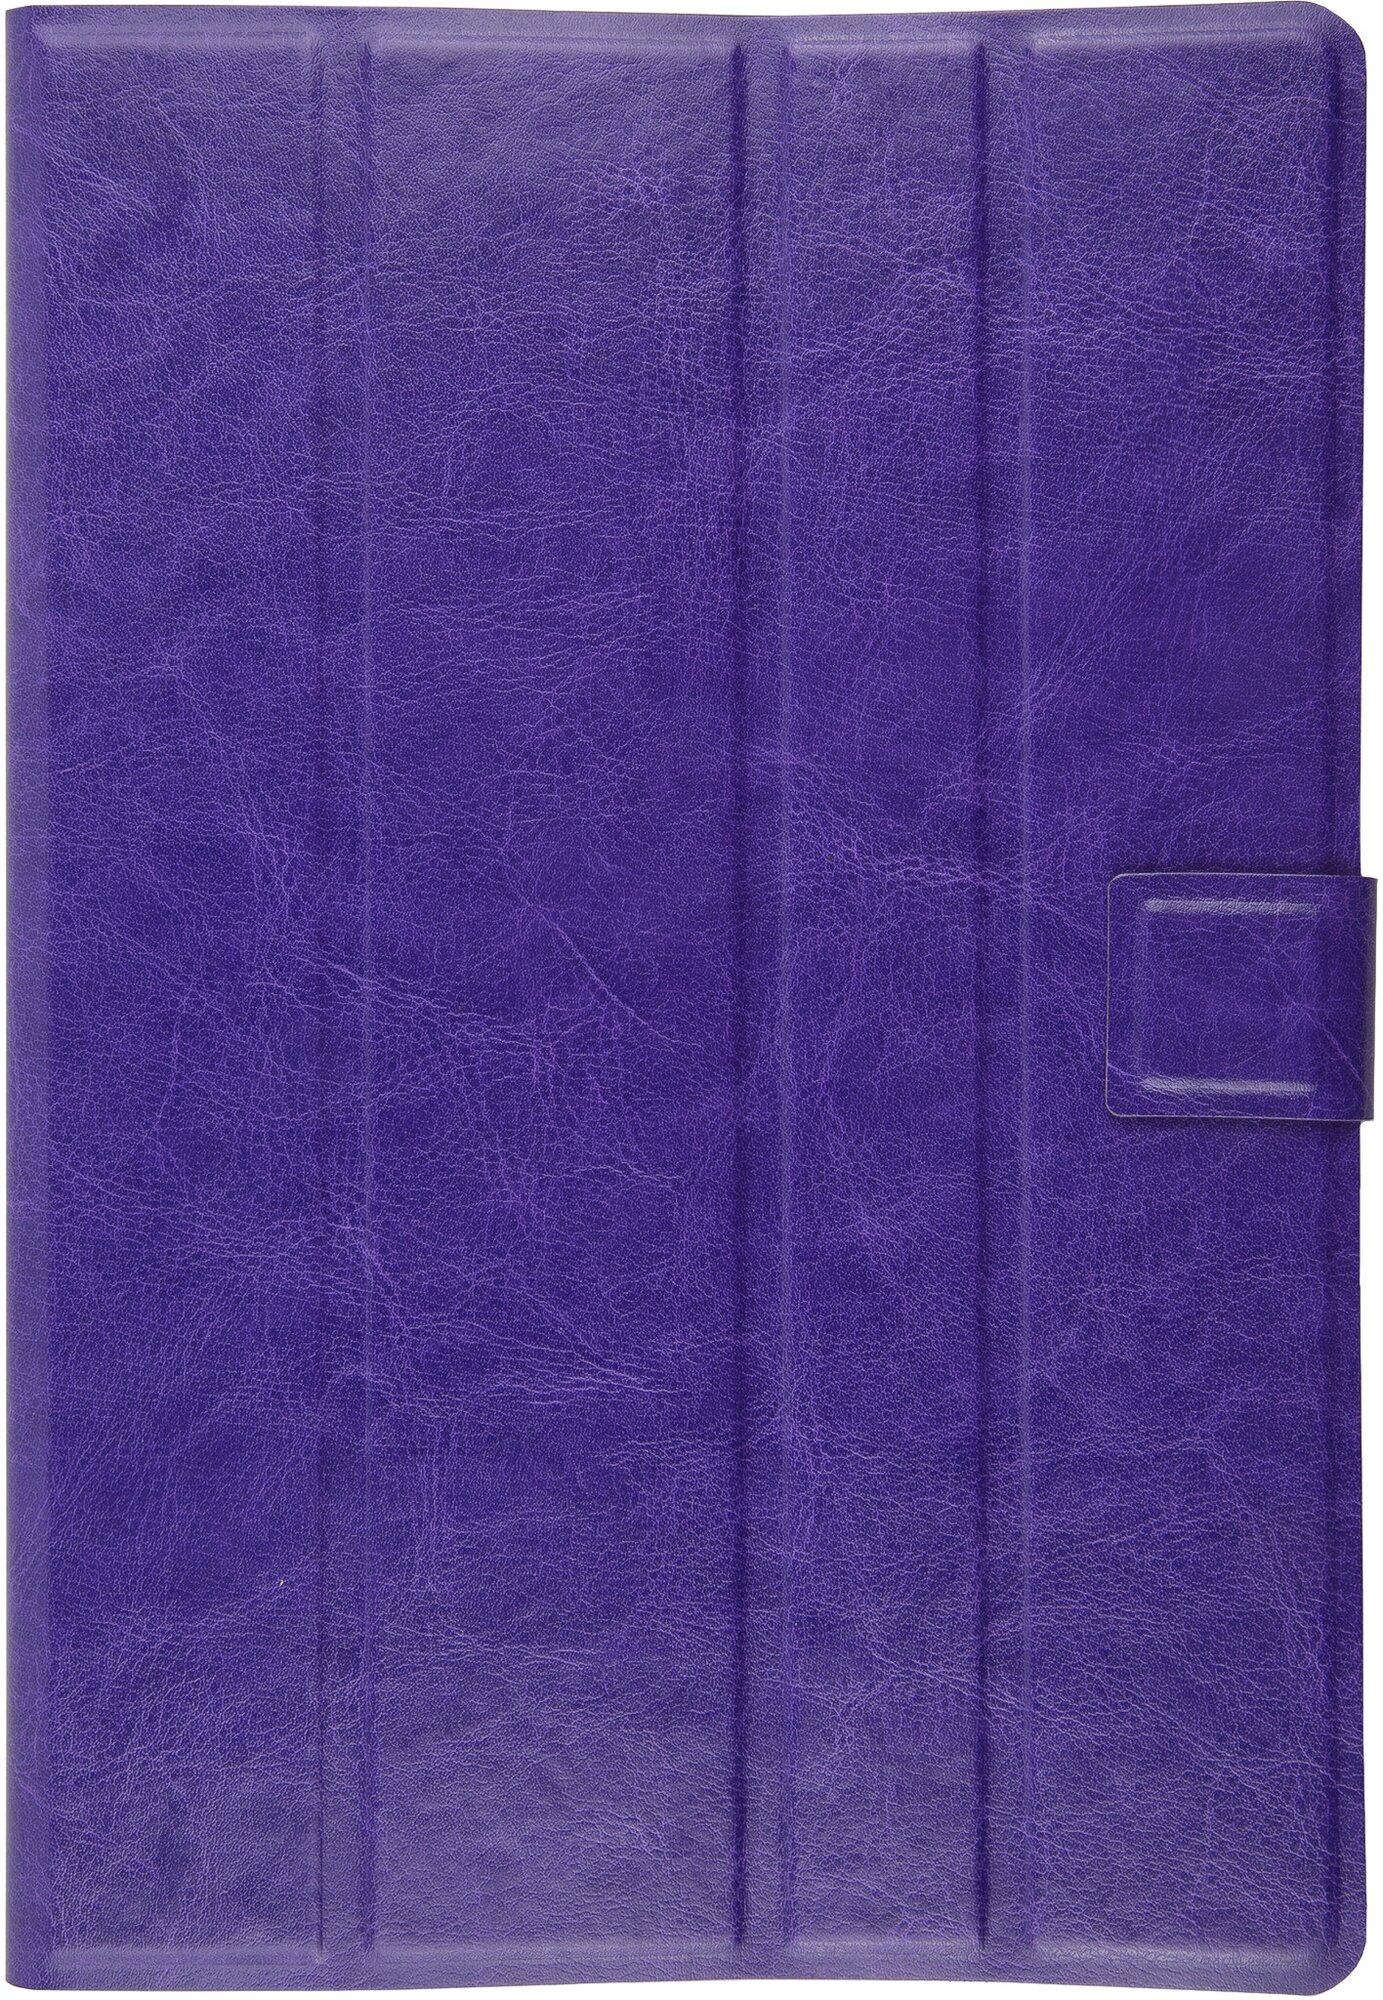 Универсальный защитный чехол-книжка Slim для планшетов 7-8 дюймов, фиолетовый